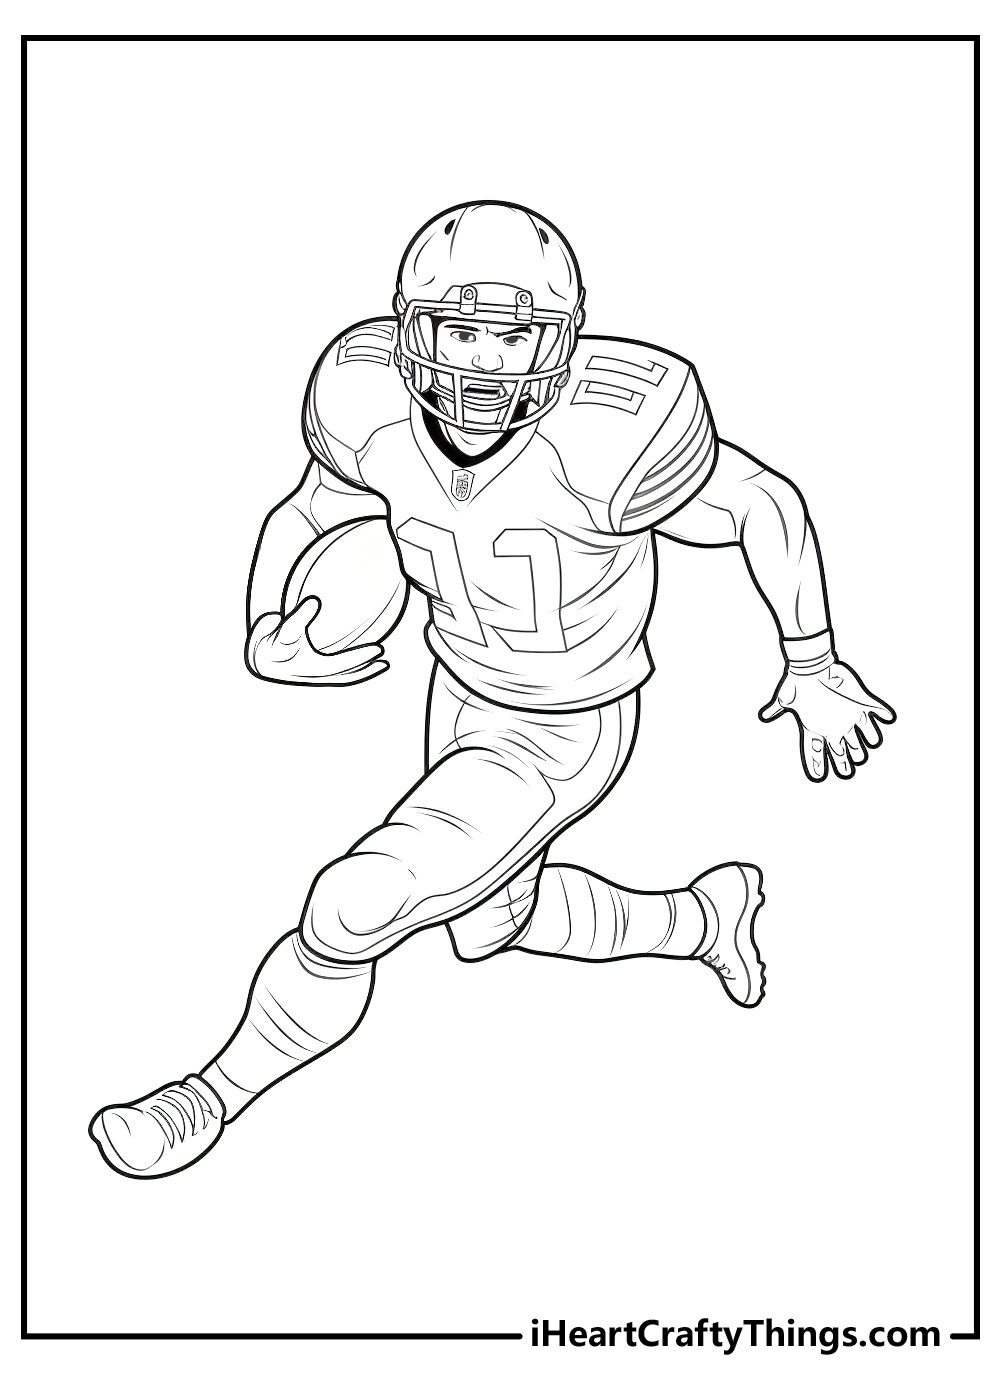 NFL coloring pdf sheet free download